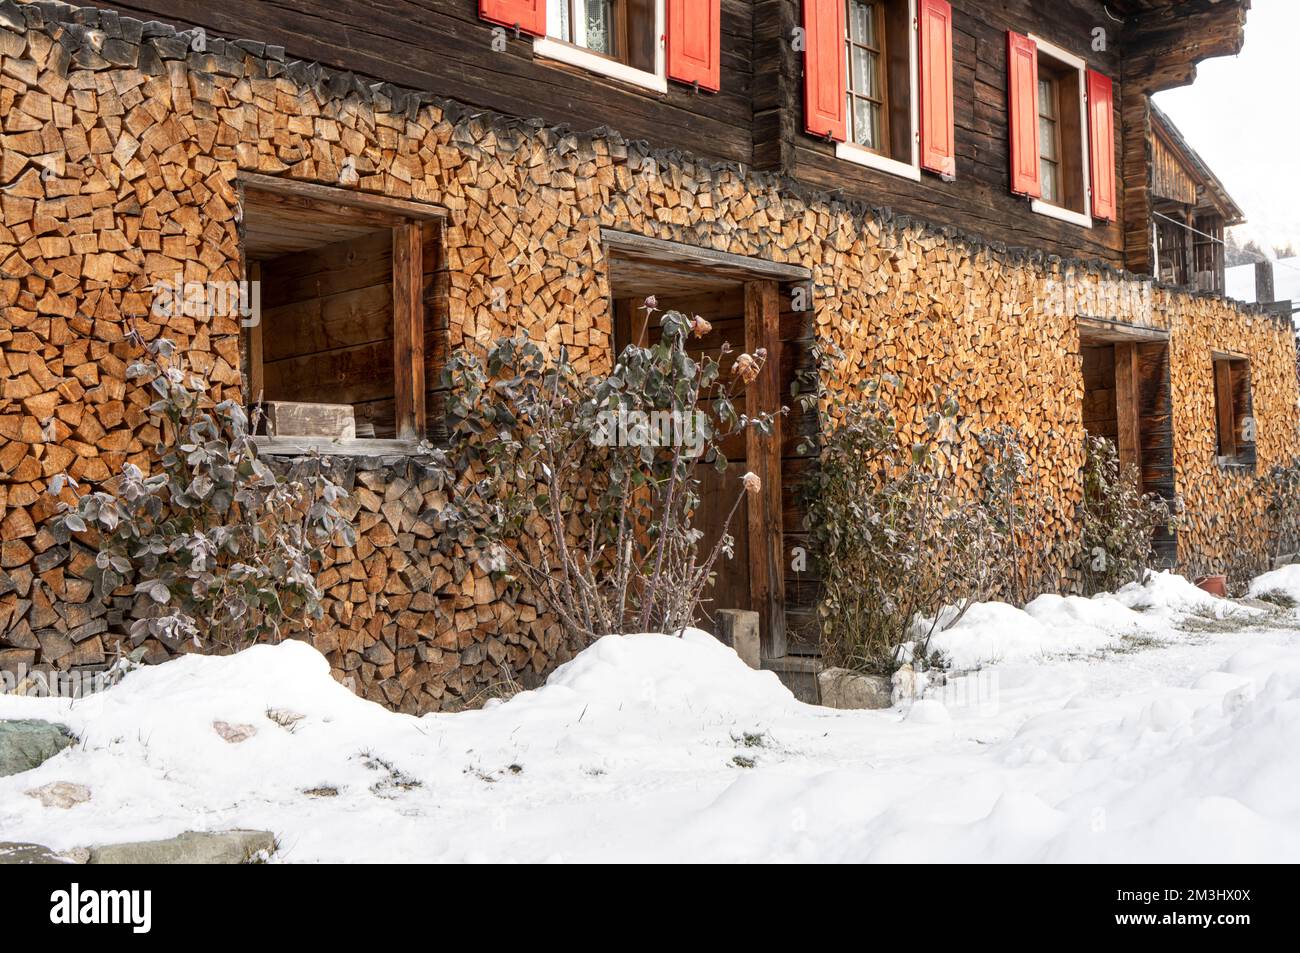 legna da ardere impilata sulla parete esterna di una tradizionale casa alpina in inverno Foto Stock